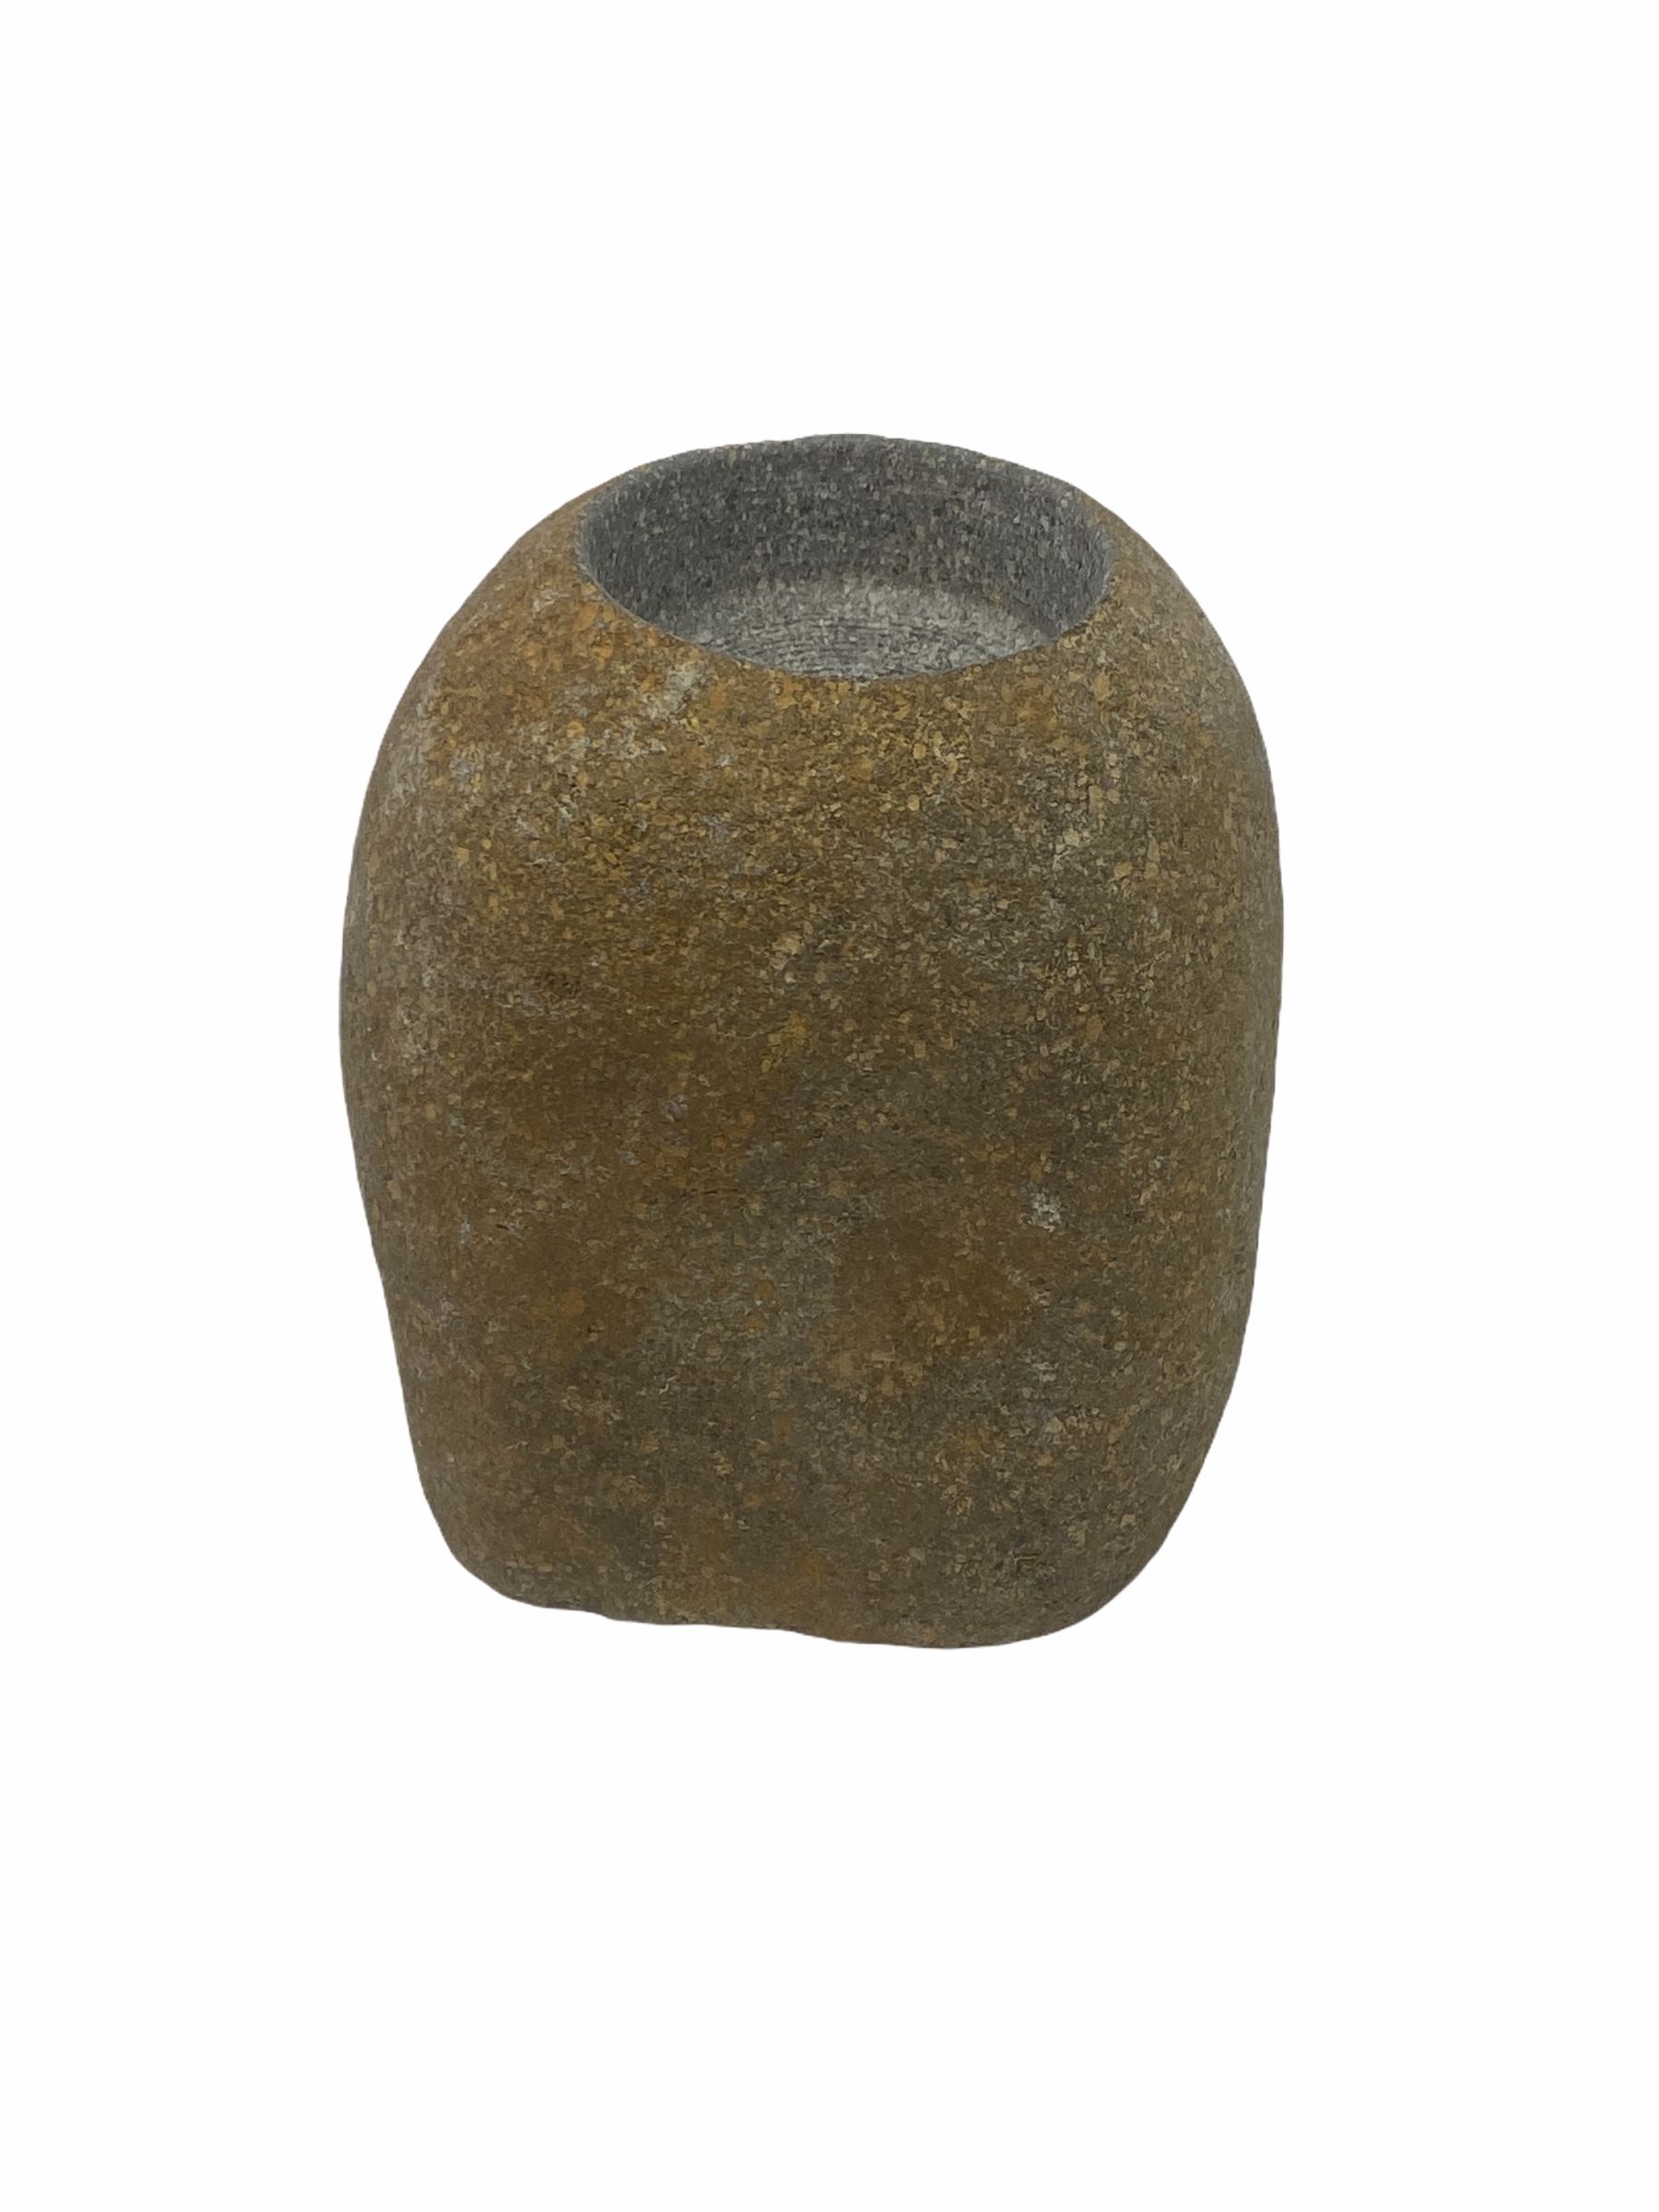 Zimbabwe Stone carved Tea Light holder - M